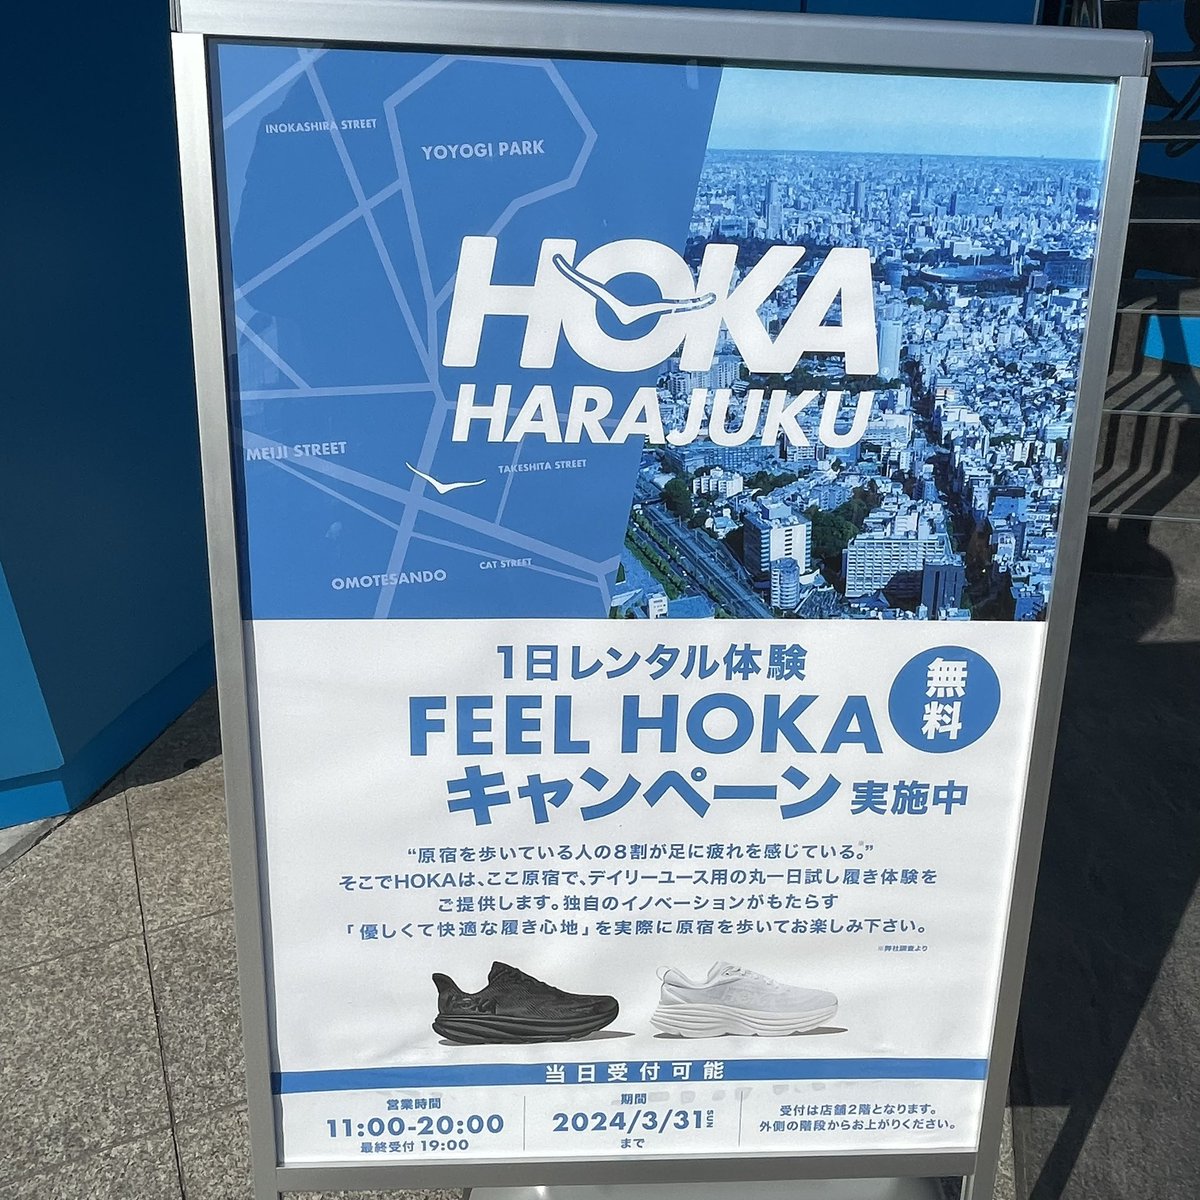 めちゃくちゃ歩きやすいし快適やなぁ
買っちゃおかな。。。
#HOKA
#HOKAHARAJUKU
#BONDI8
#FEELHOKAcampaign
#でも買うなら白ではないw